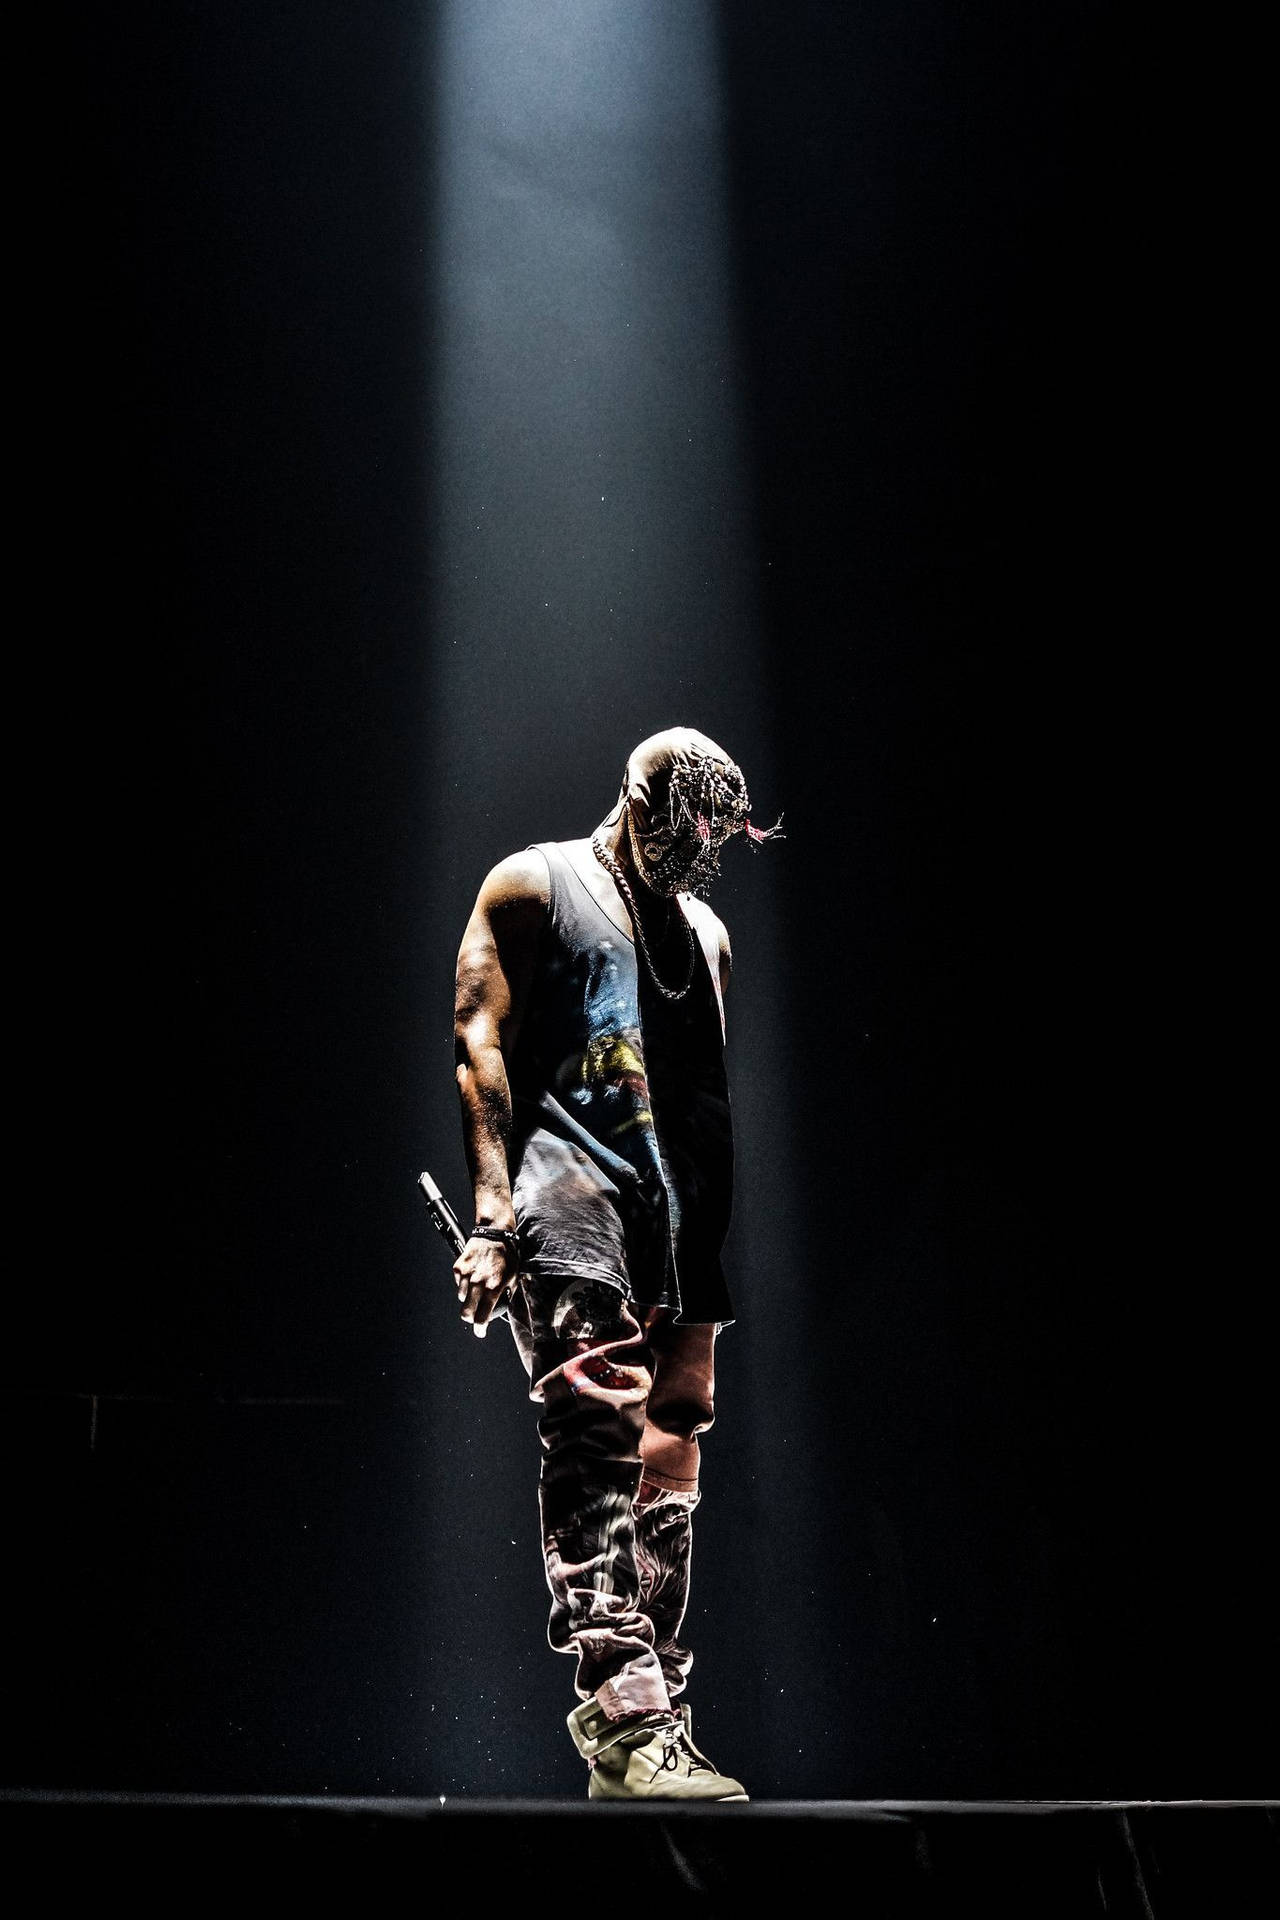 Kanye West Concert Stage Background